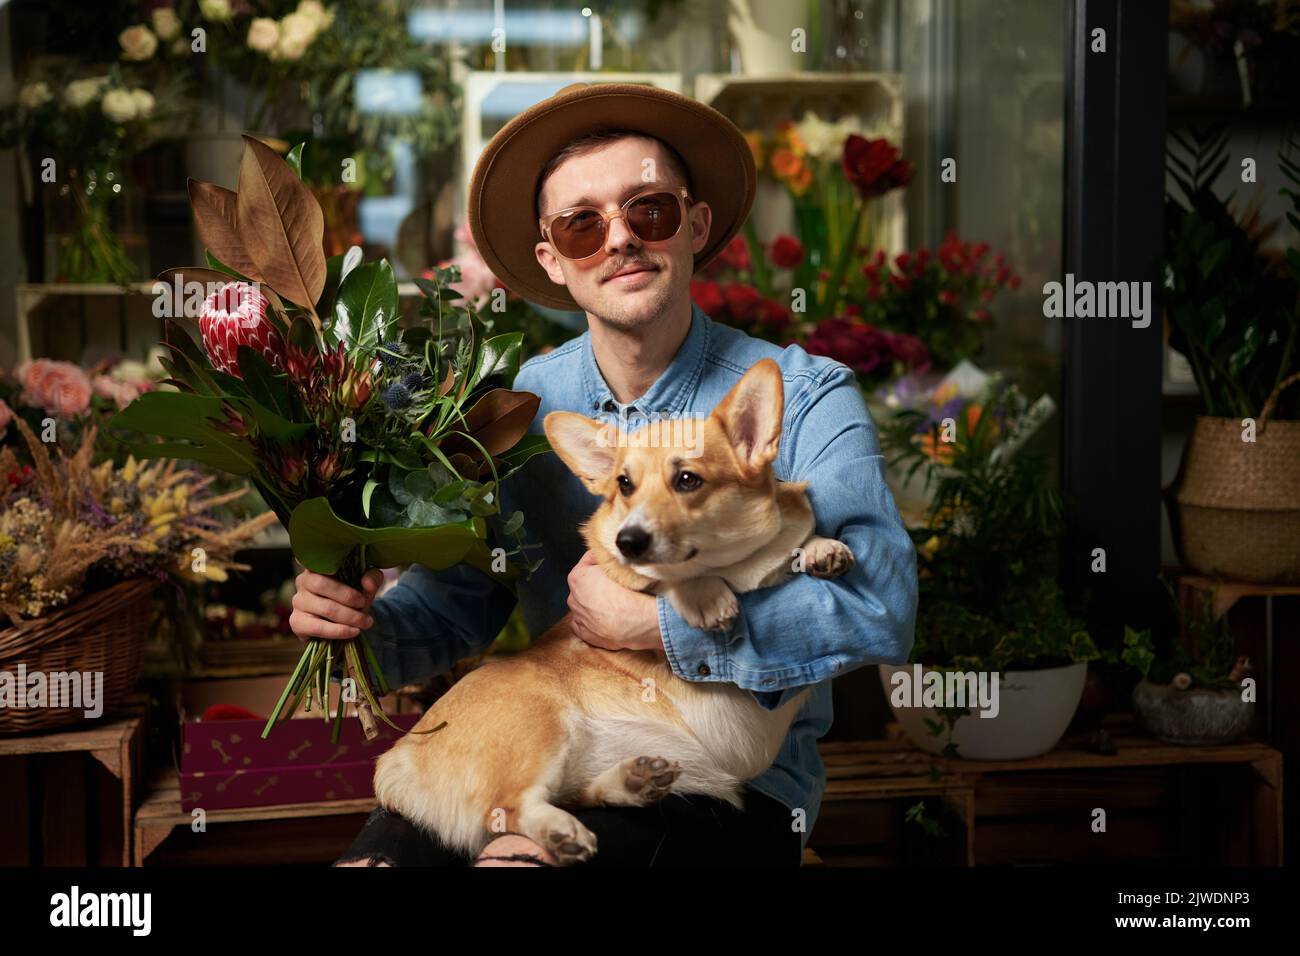 Hippster uomo in occhiali da sole e cappello con bouquet di fiori freschi di primavera e corgi gallese cane in negozio di fiori. Giorno della mamma, giorno di San Valentino o Giornata internazionale della donna. Immagini di alta qualità Foto Stock